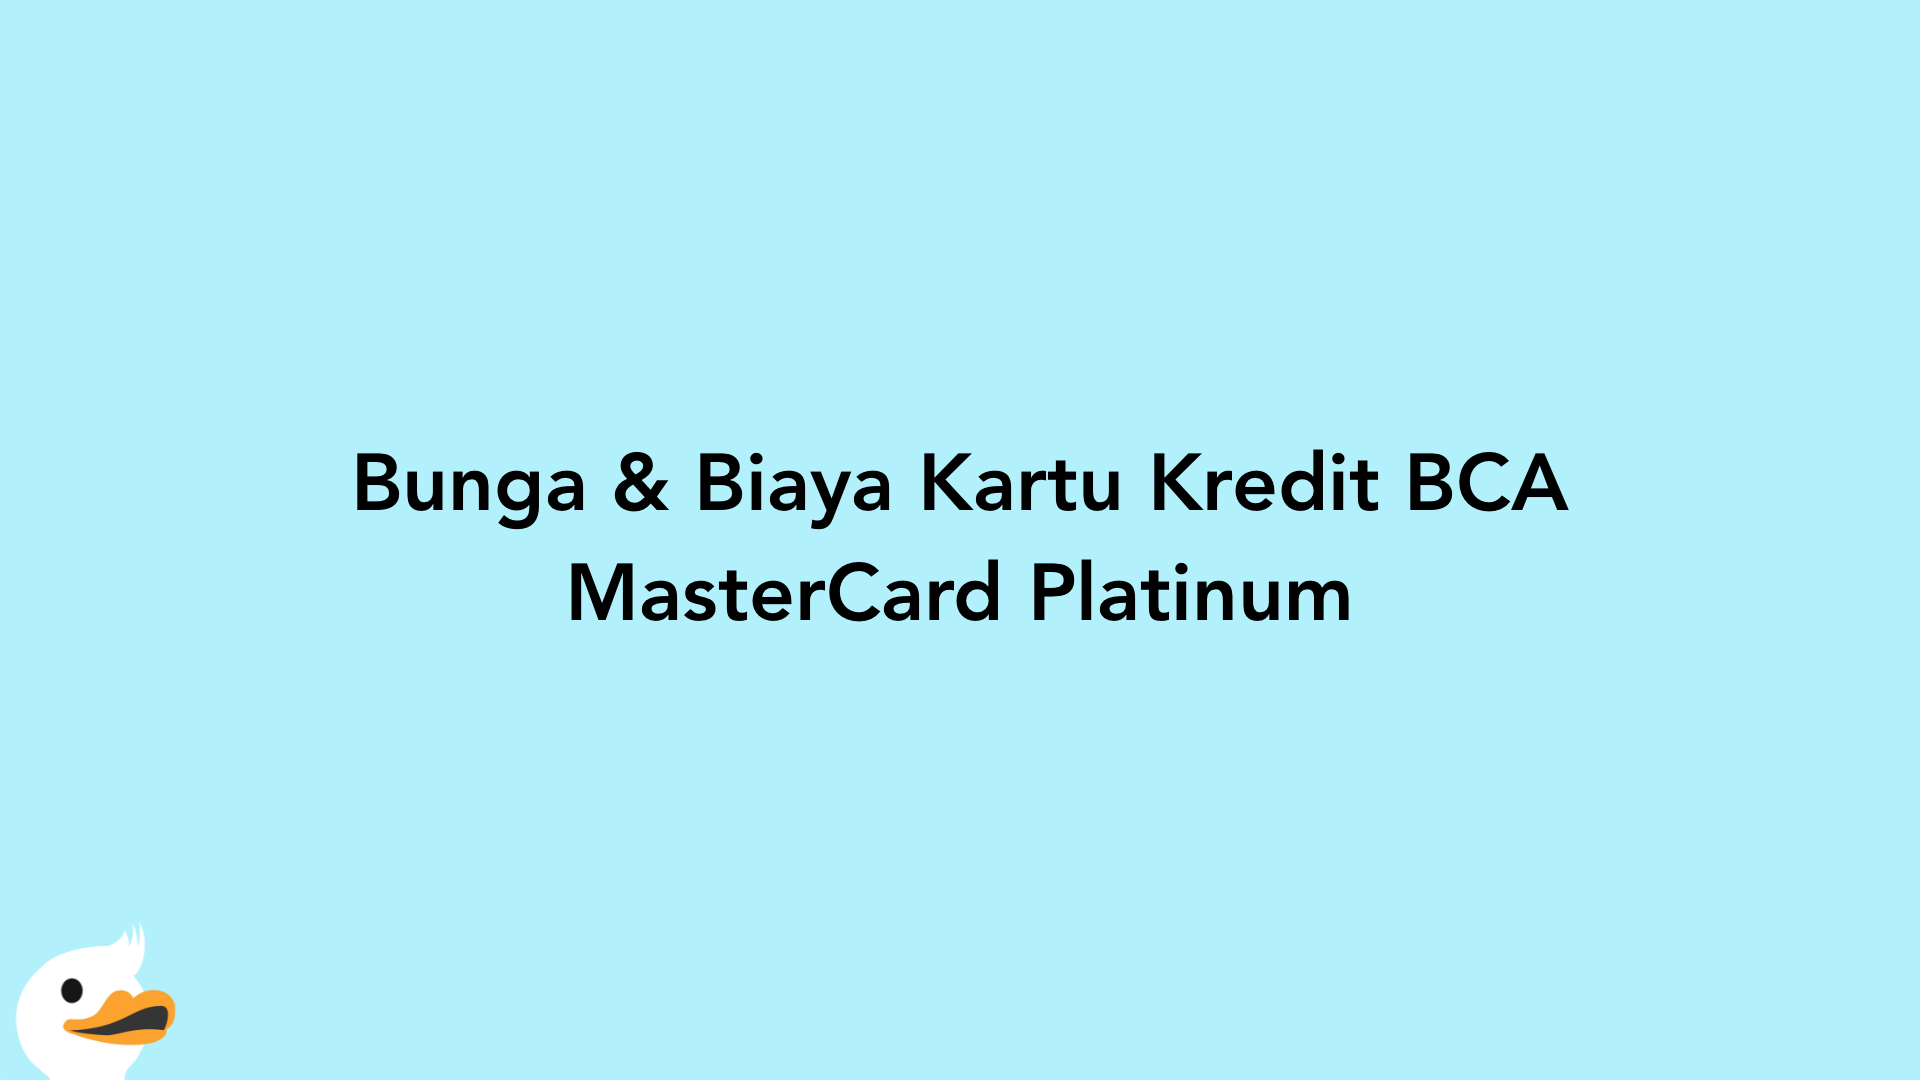 Bunga & Biaya Kartu Kredit BCA MasterCard Platinum